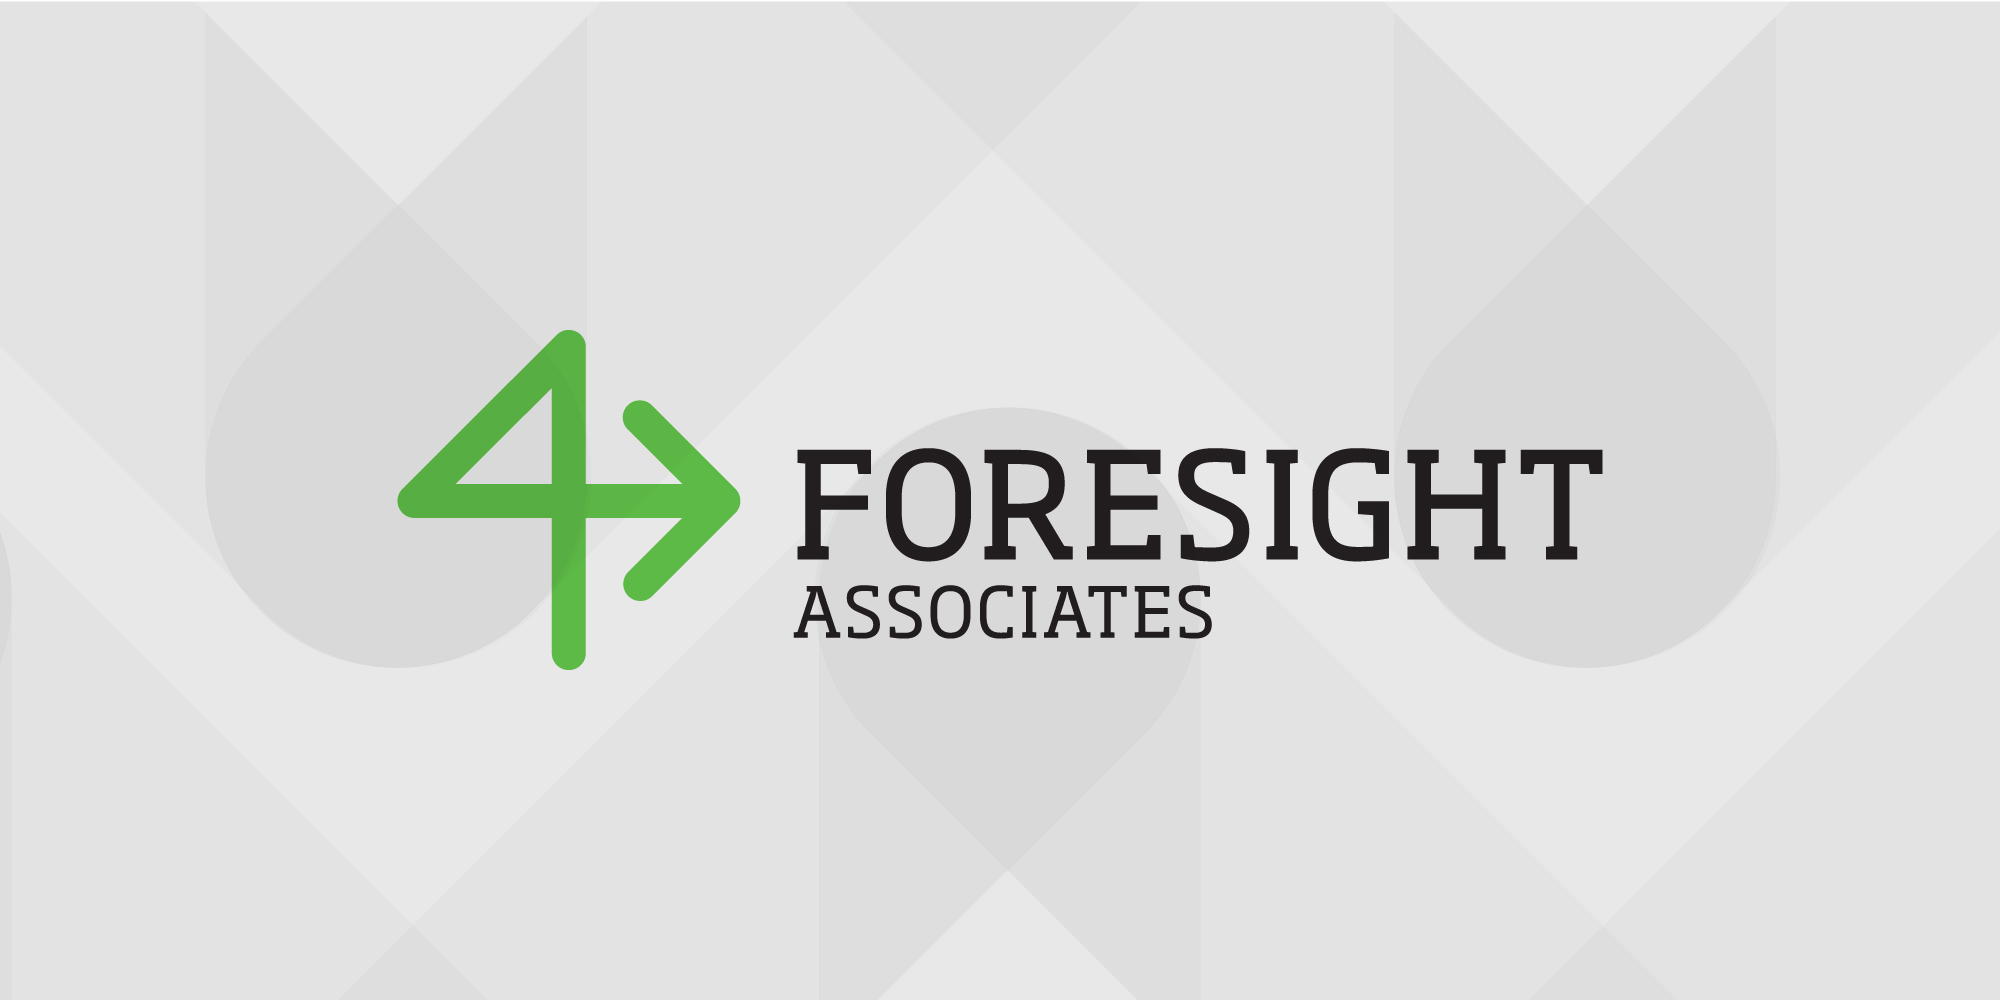 Foresight Placeholder Image showing logo.